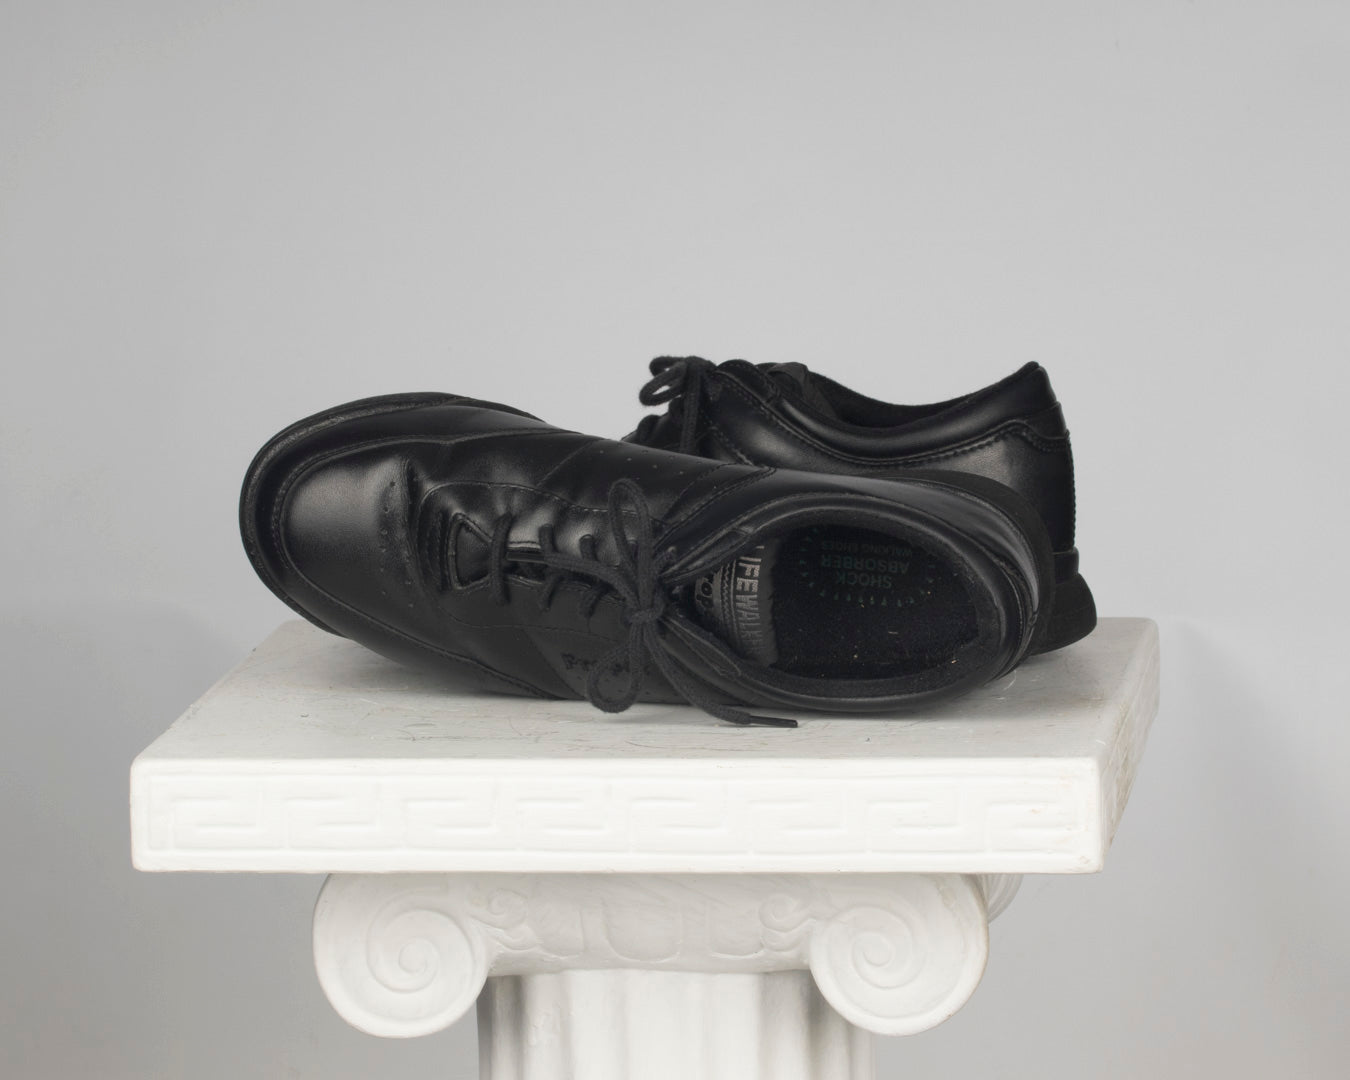 Black Dad sneakers - Propet - women's 9